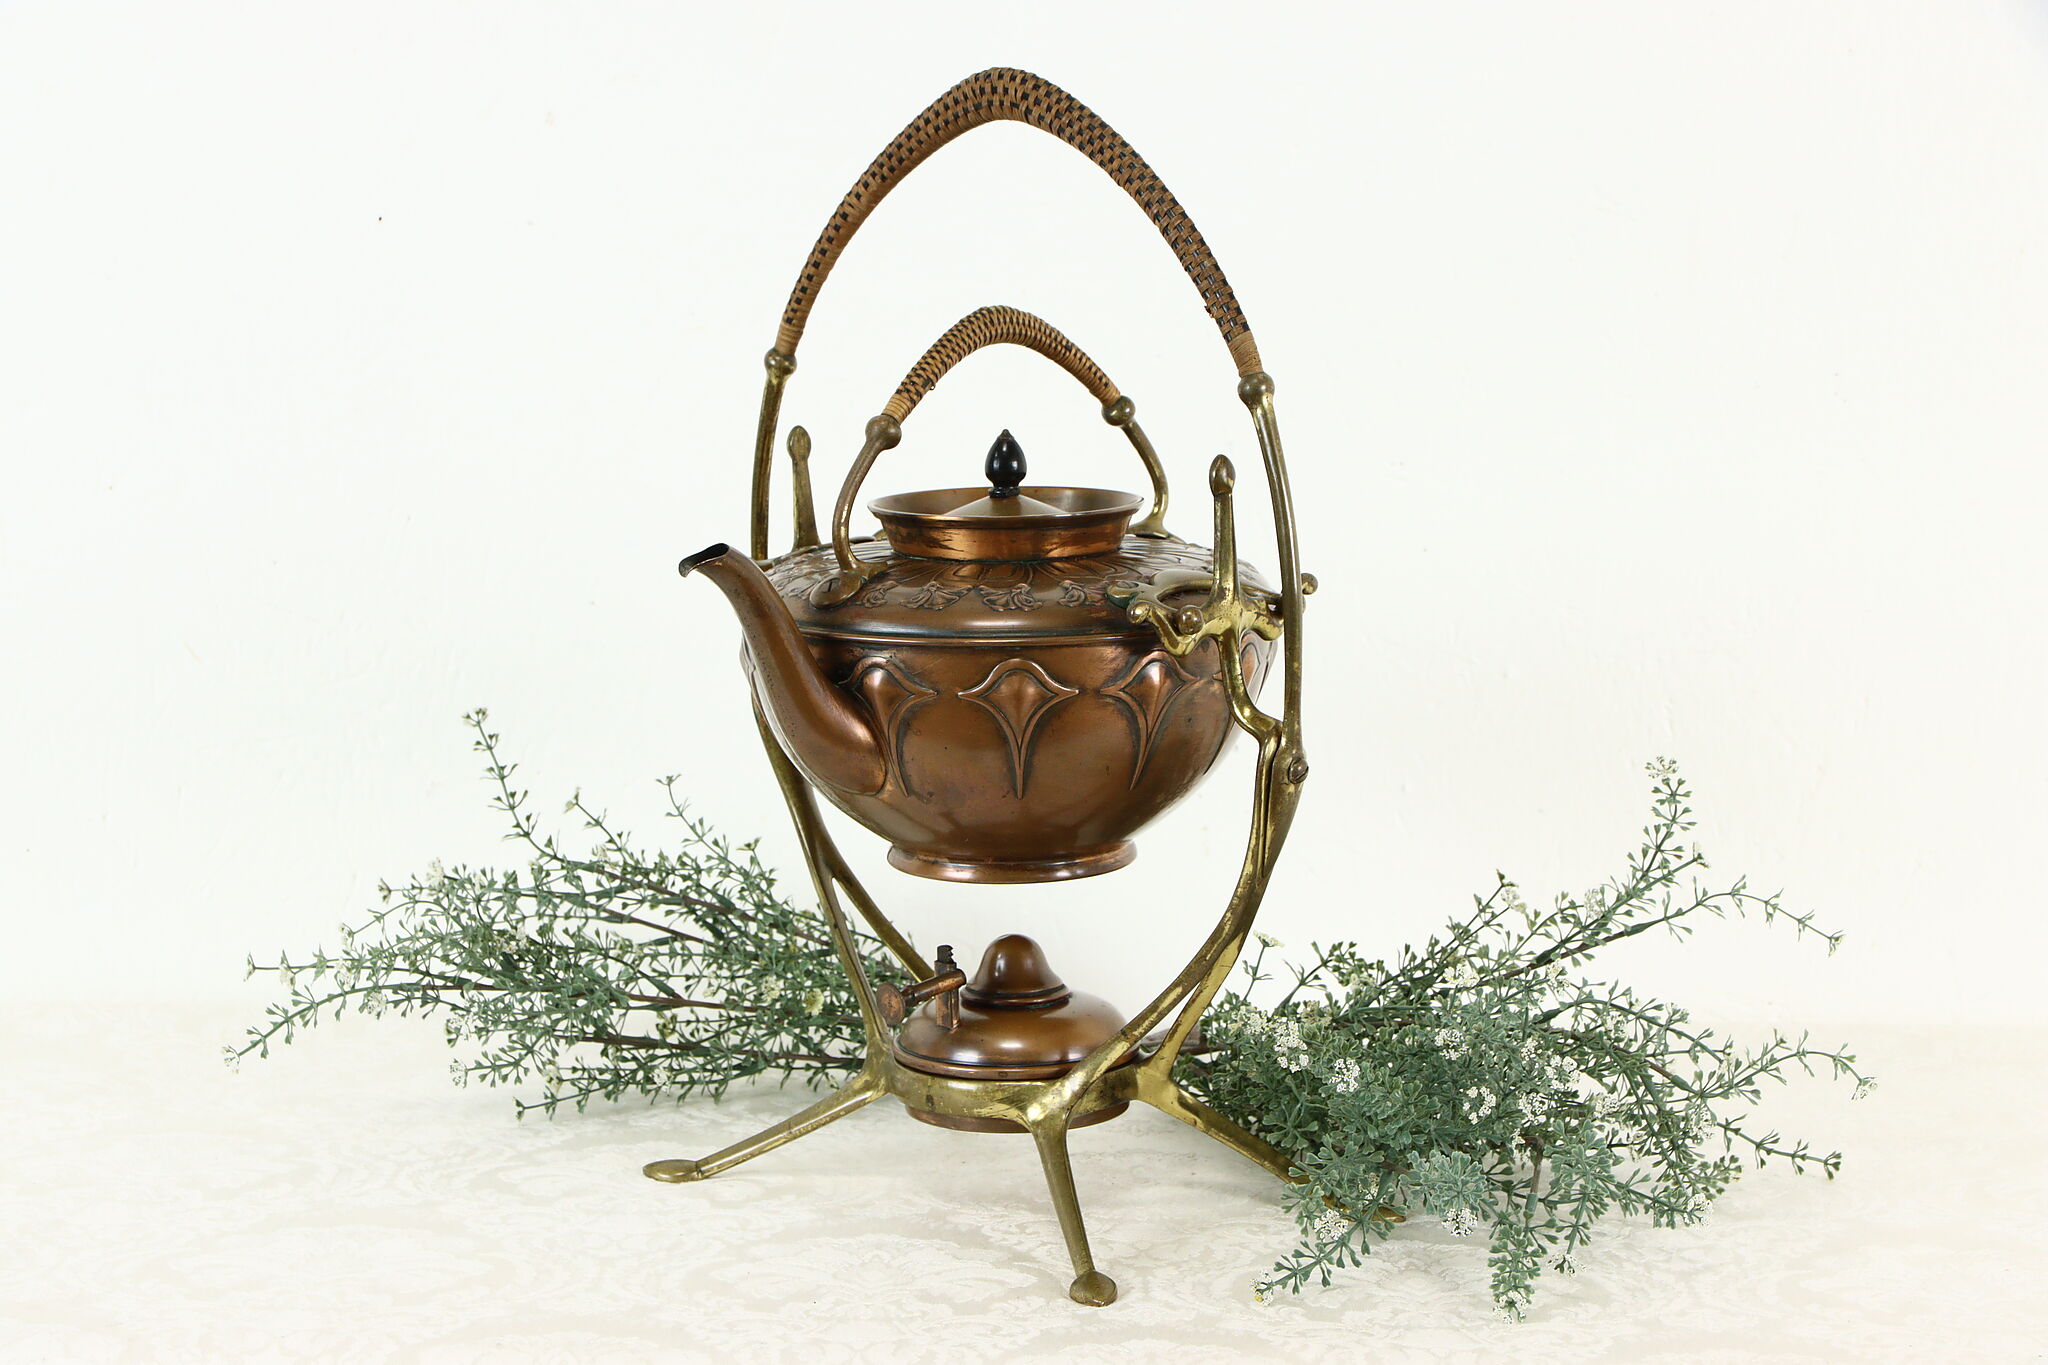 Vintage Brass Tea Pot, Jug with Handle Brass Art Nouveau - 3 1/2x7